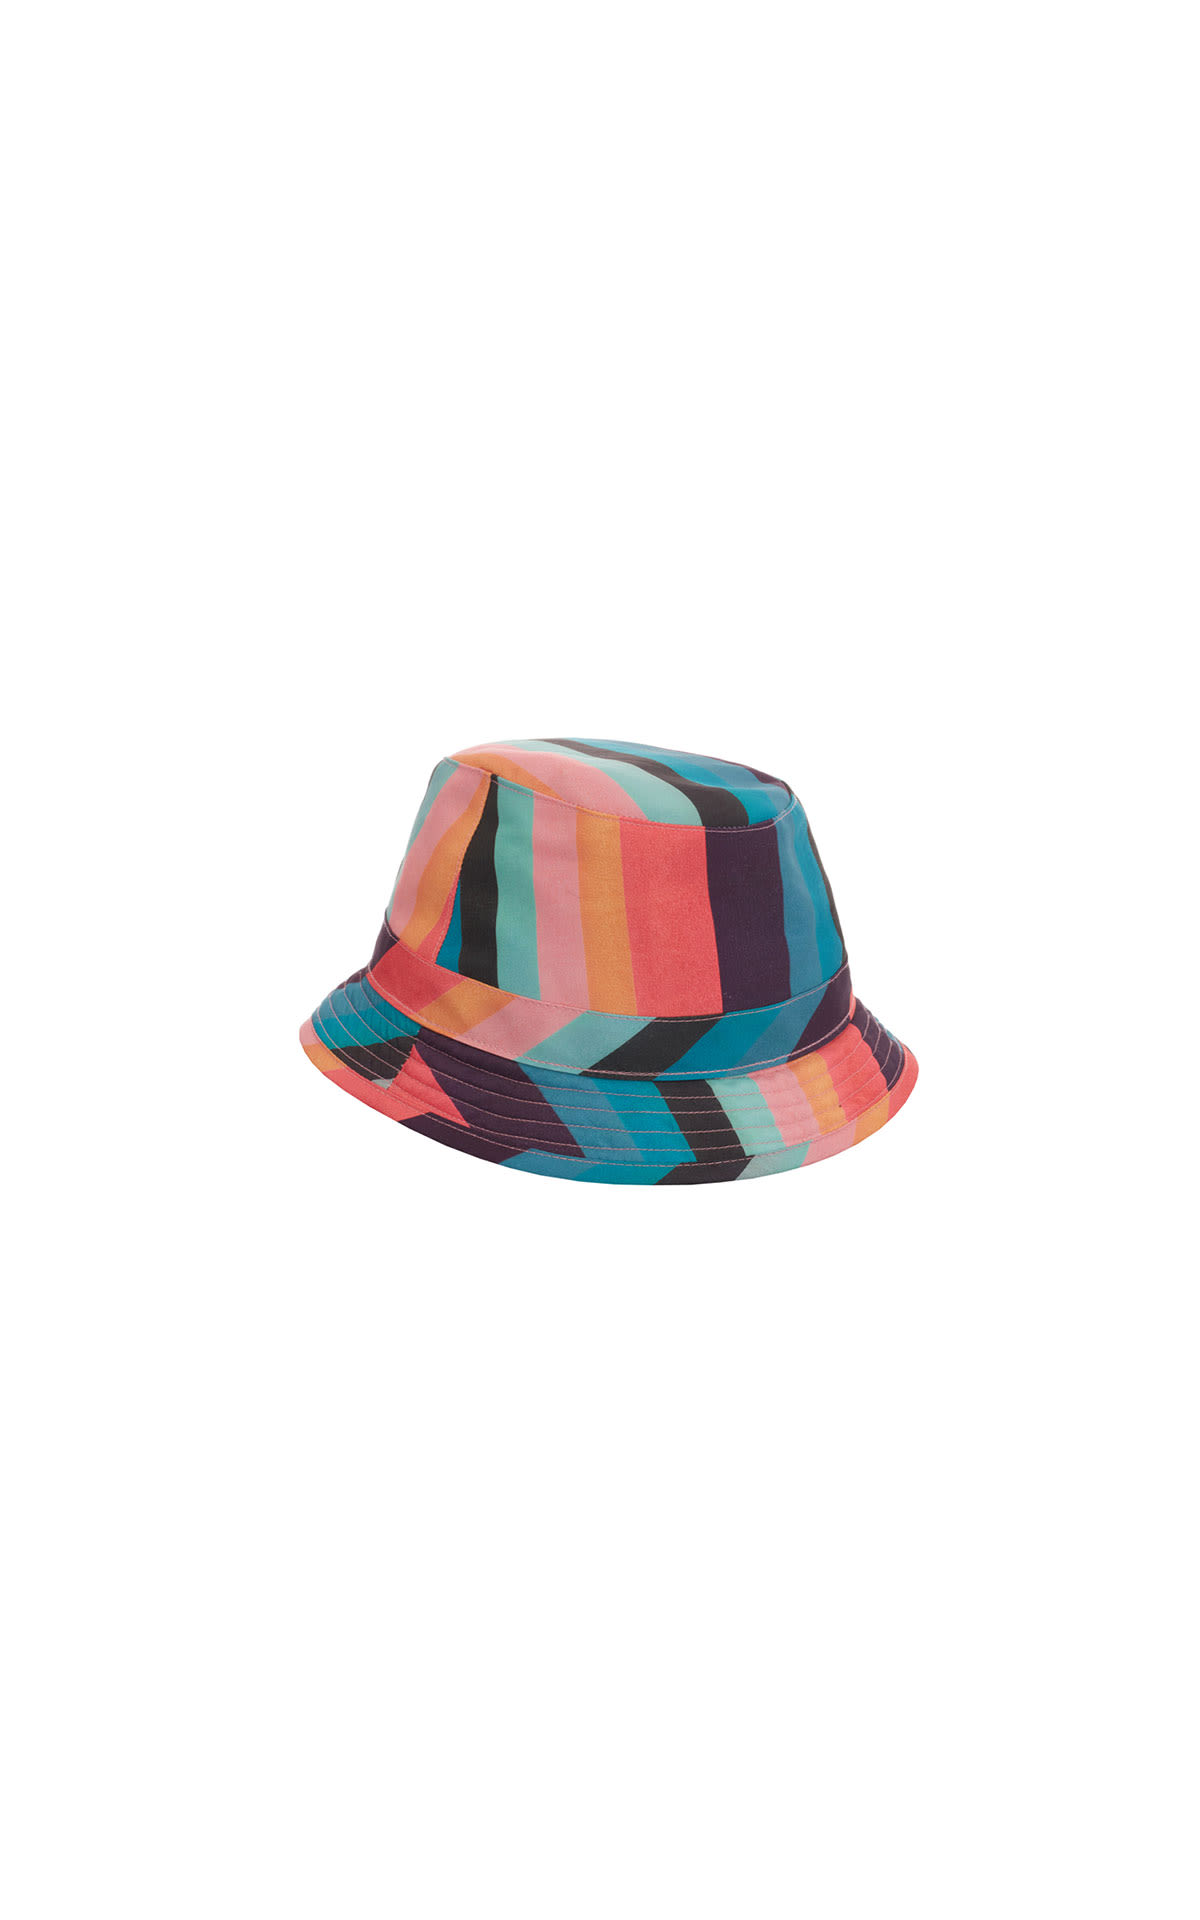 Paul Smith Artist stripe bucket hat from Bicester Village